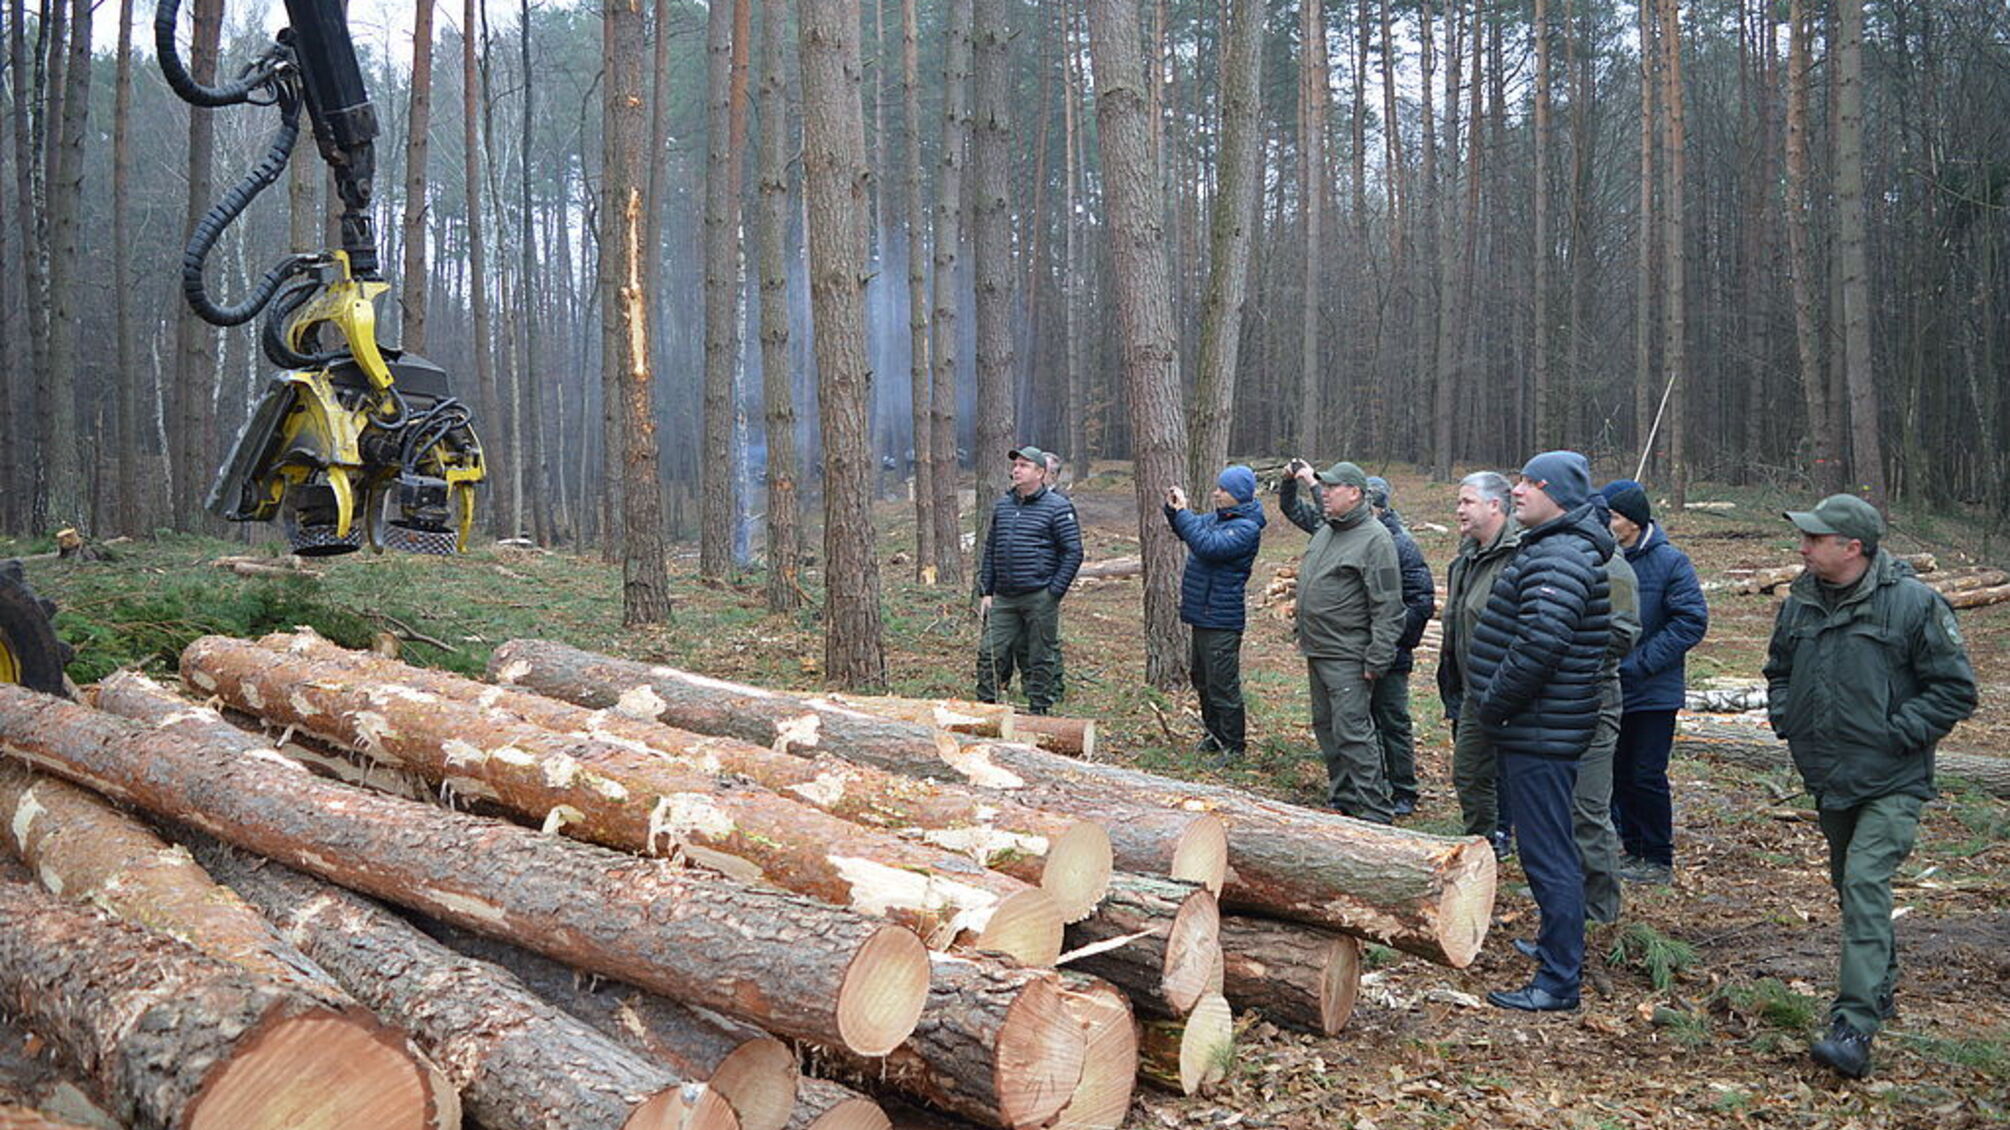 В Ровенской области государственный лесхоз приобрел автомобиль для руководителя за 1,5 млн грн, – СМИ